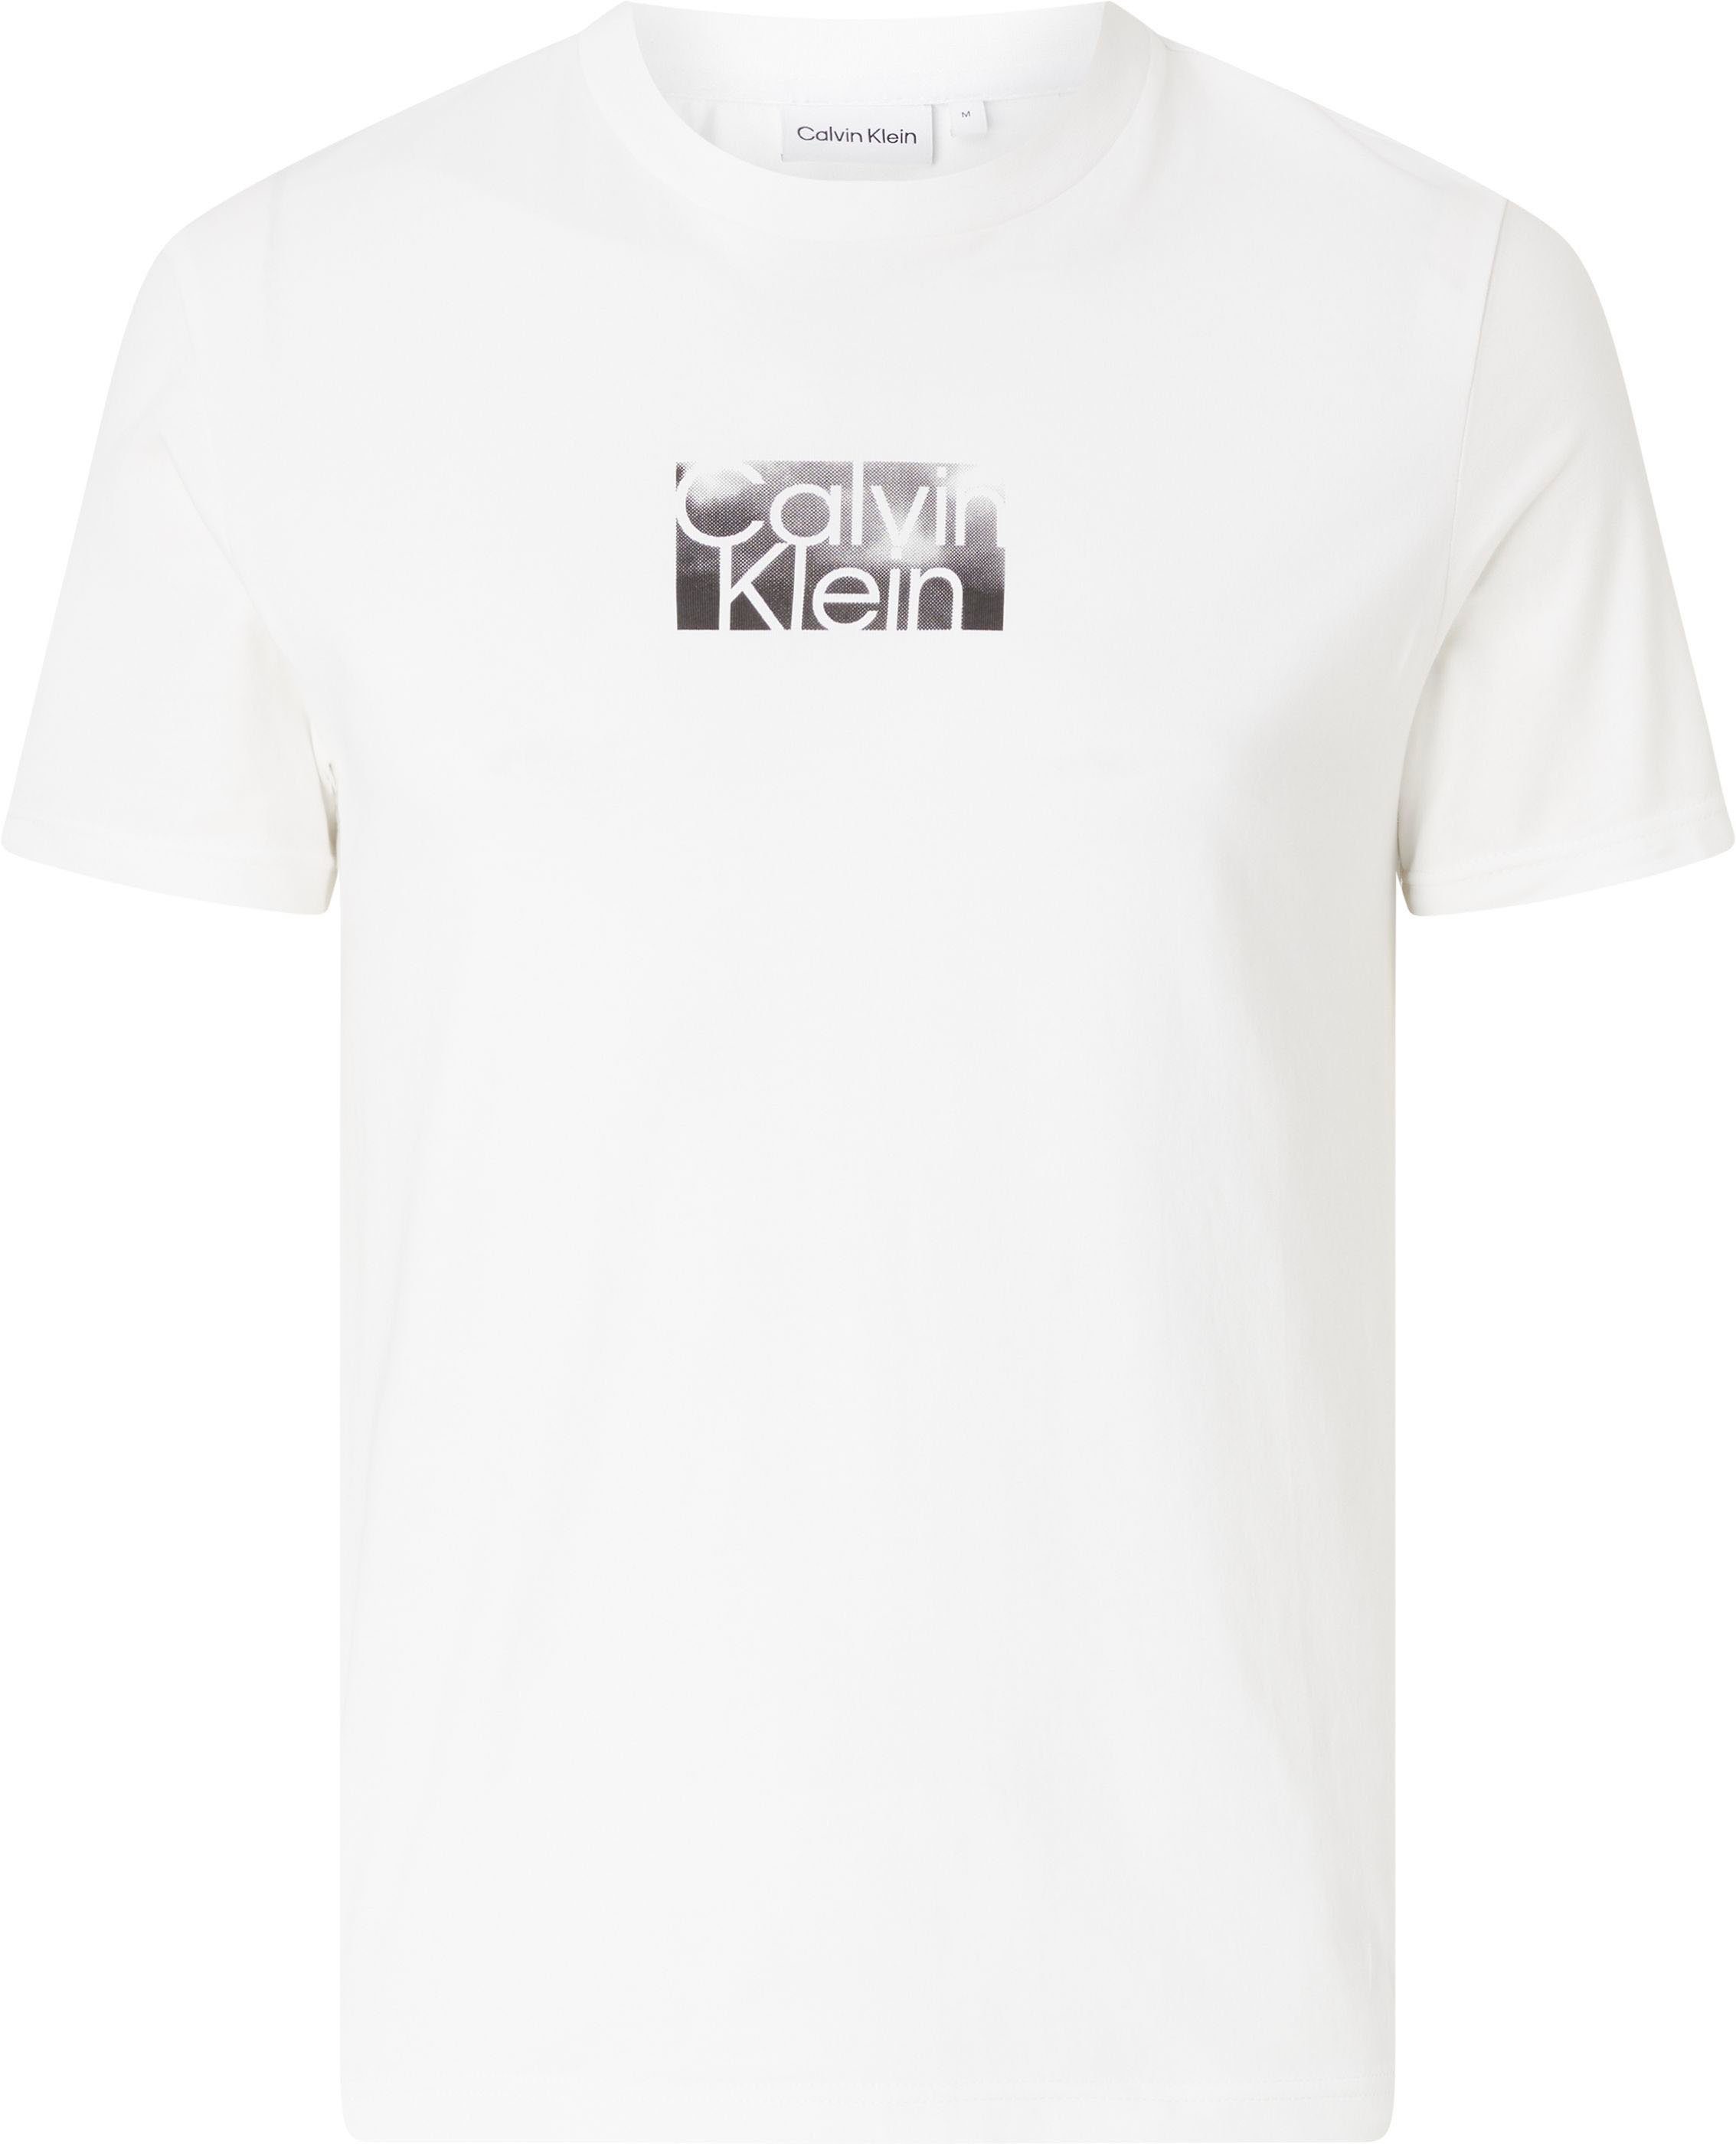 Logoschriftzug Calvin T-Shirt Klein weiß mit Big&Tall